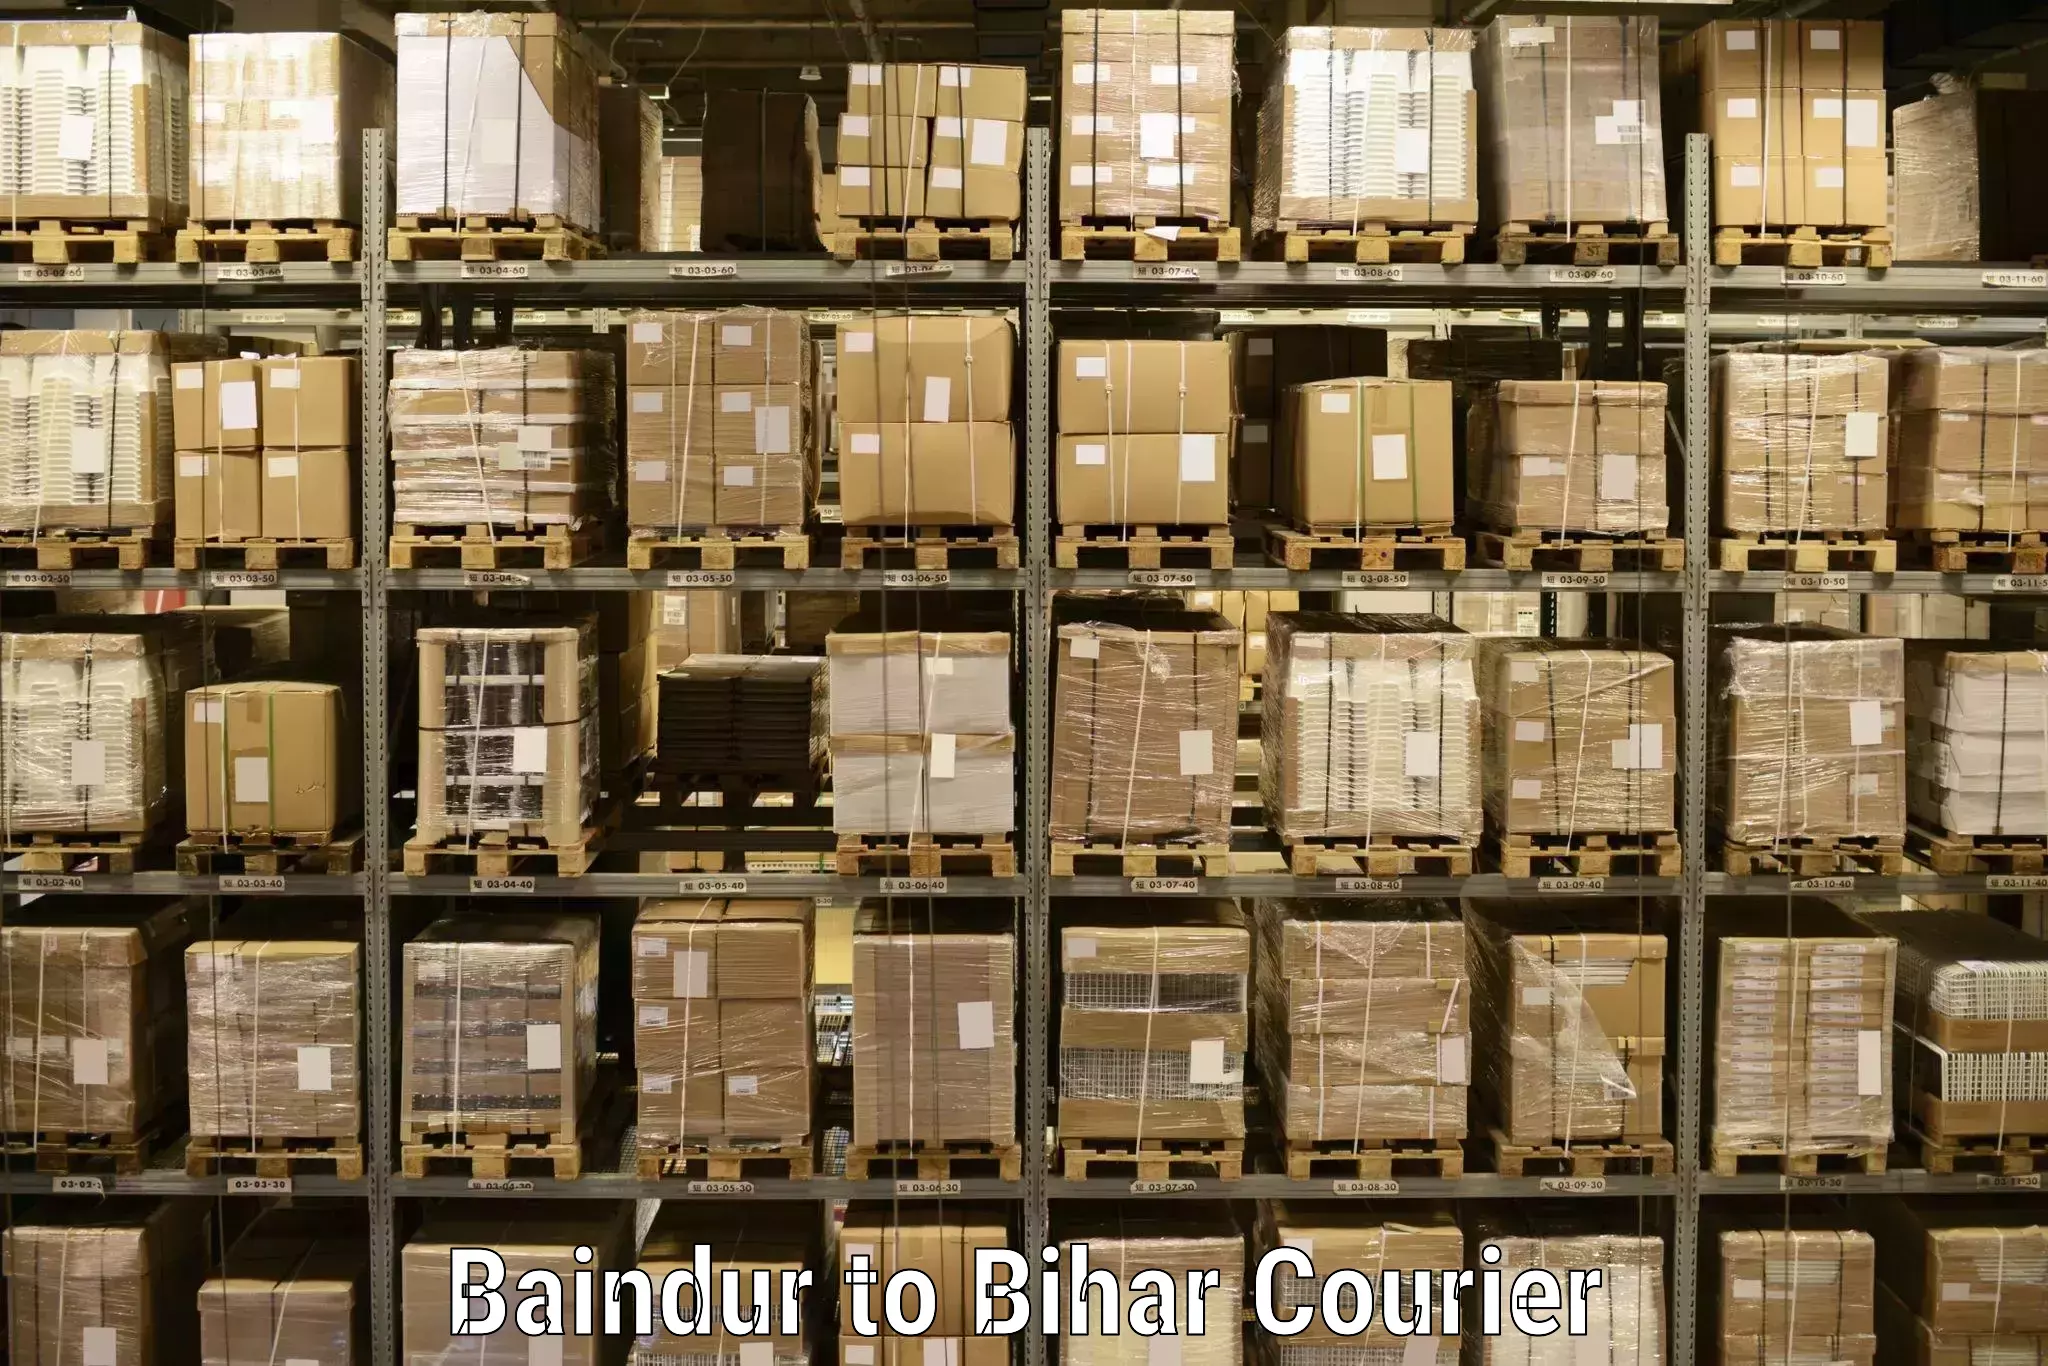 Express logistics service Baindur to Bihar